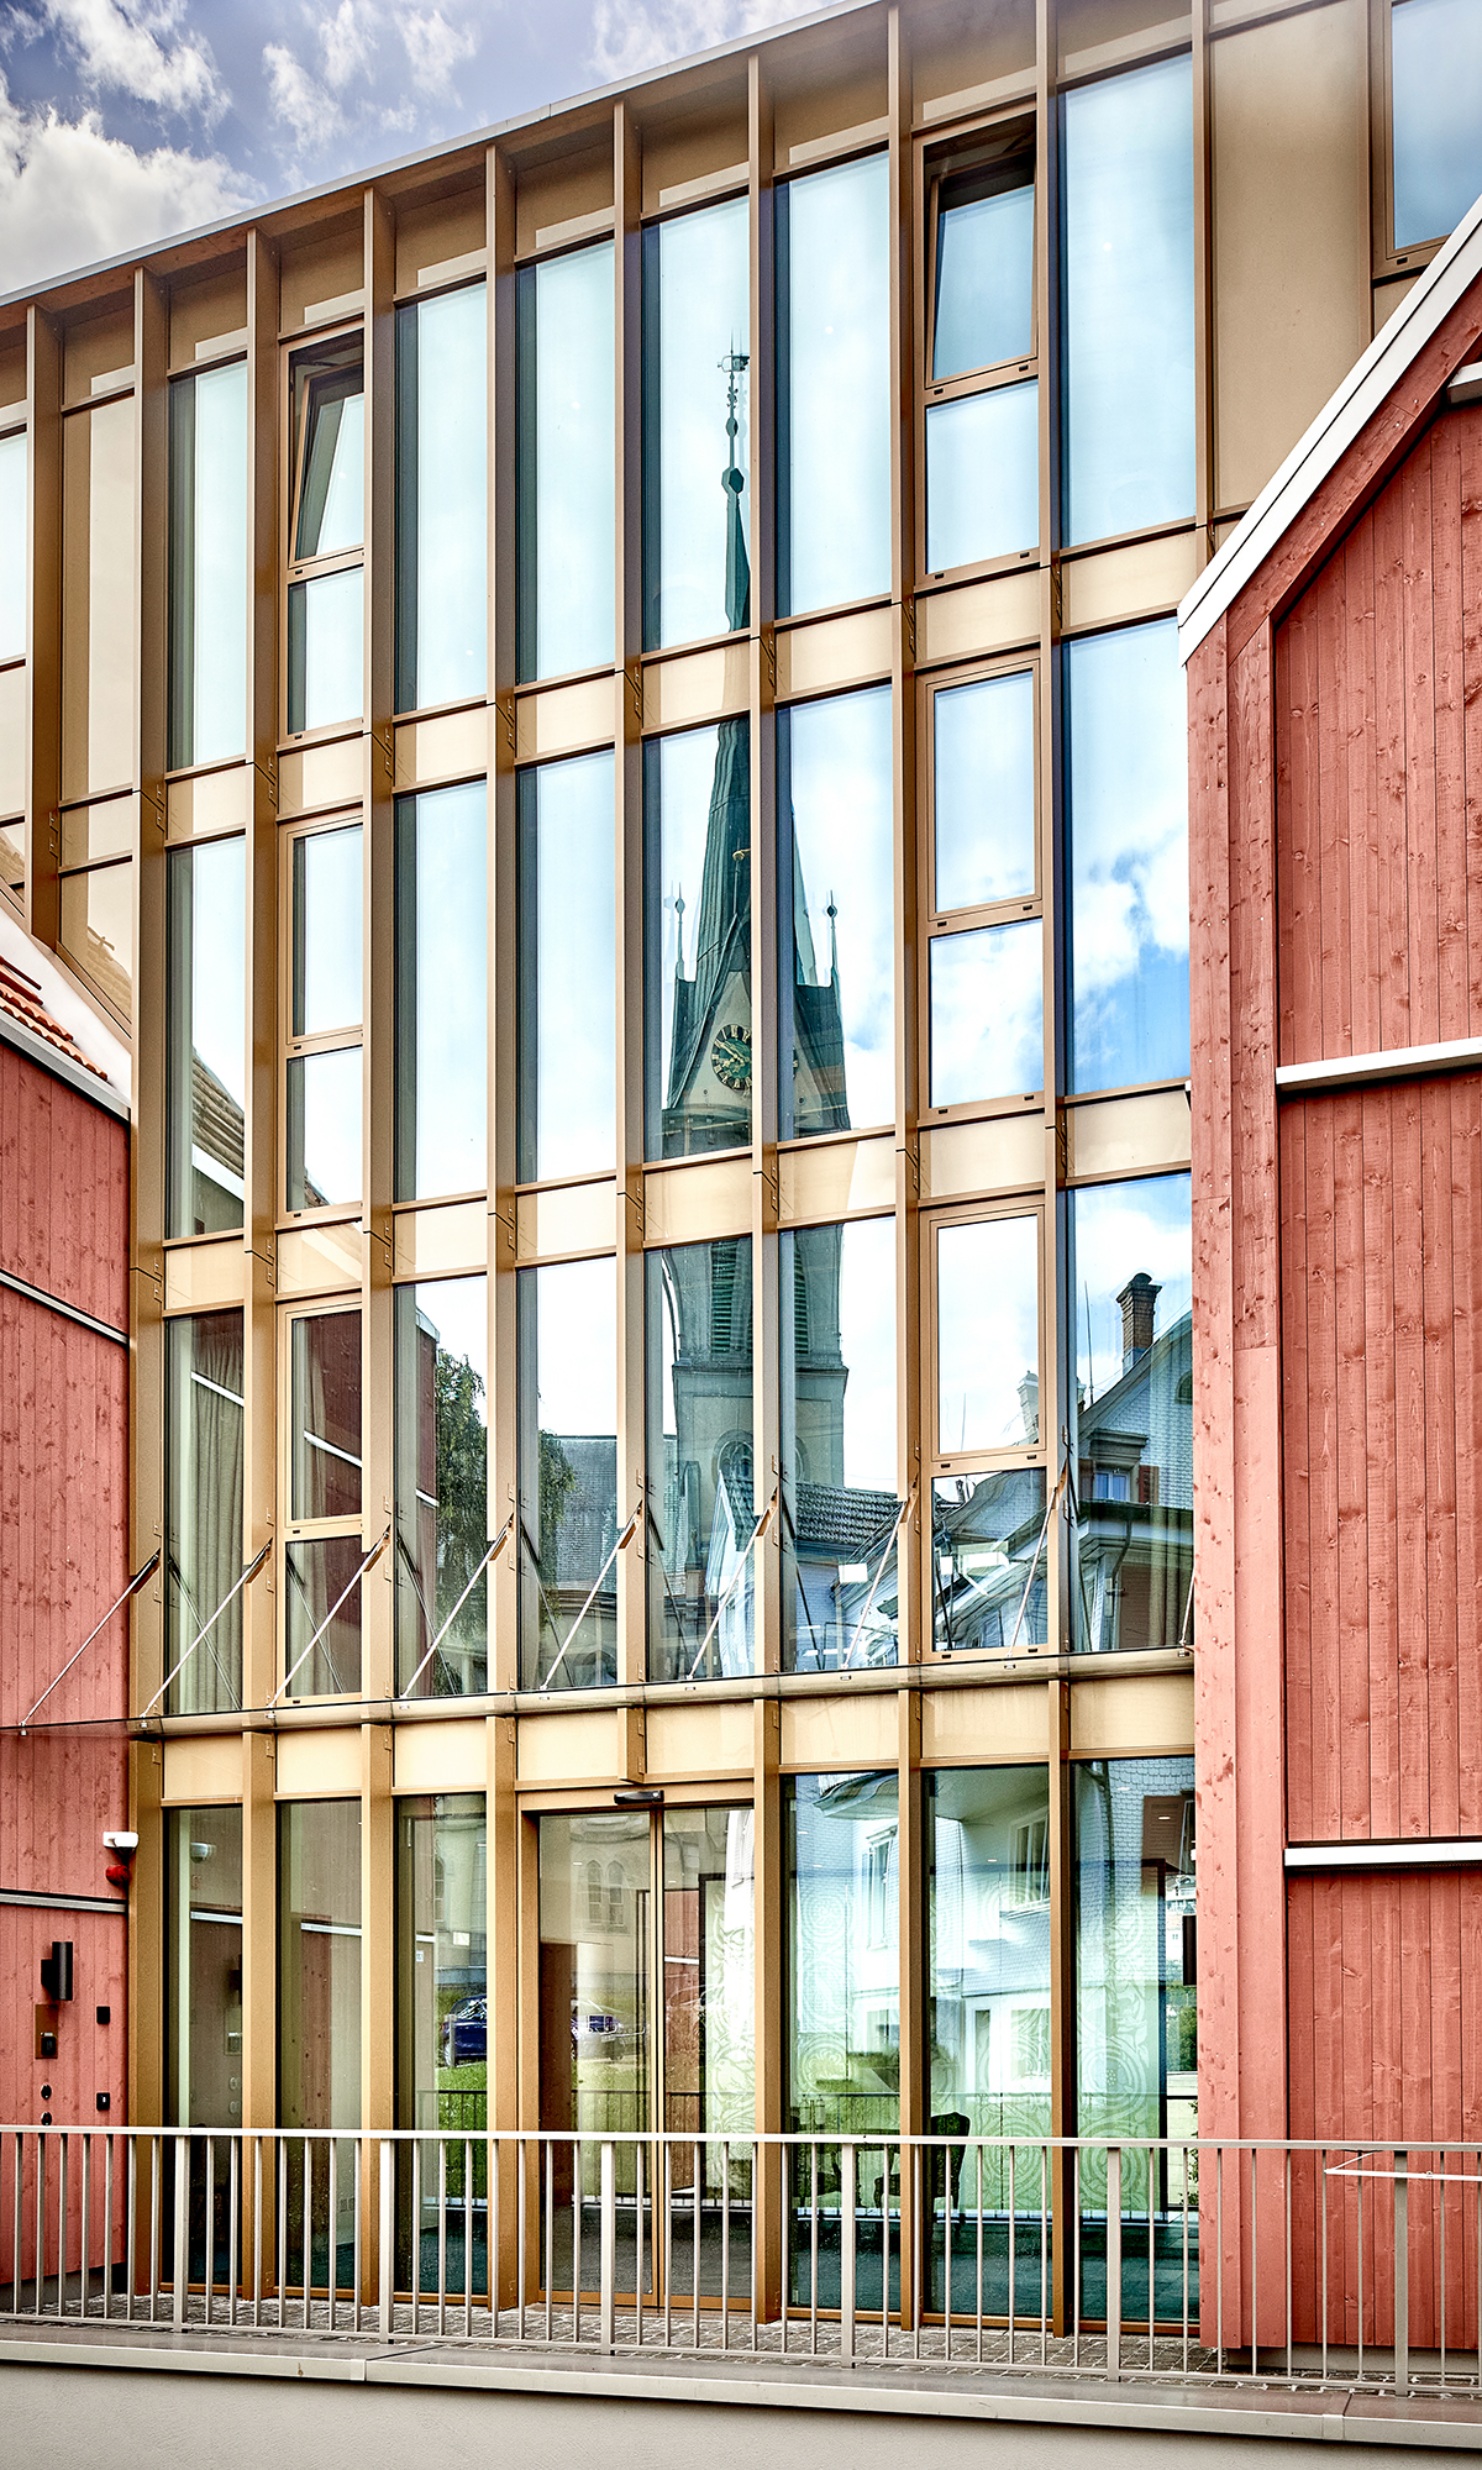 Façade moderne avec beaucoup de verre, dans laquelle se reflète le clocher de l'église